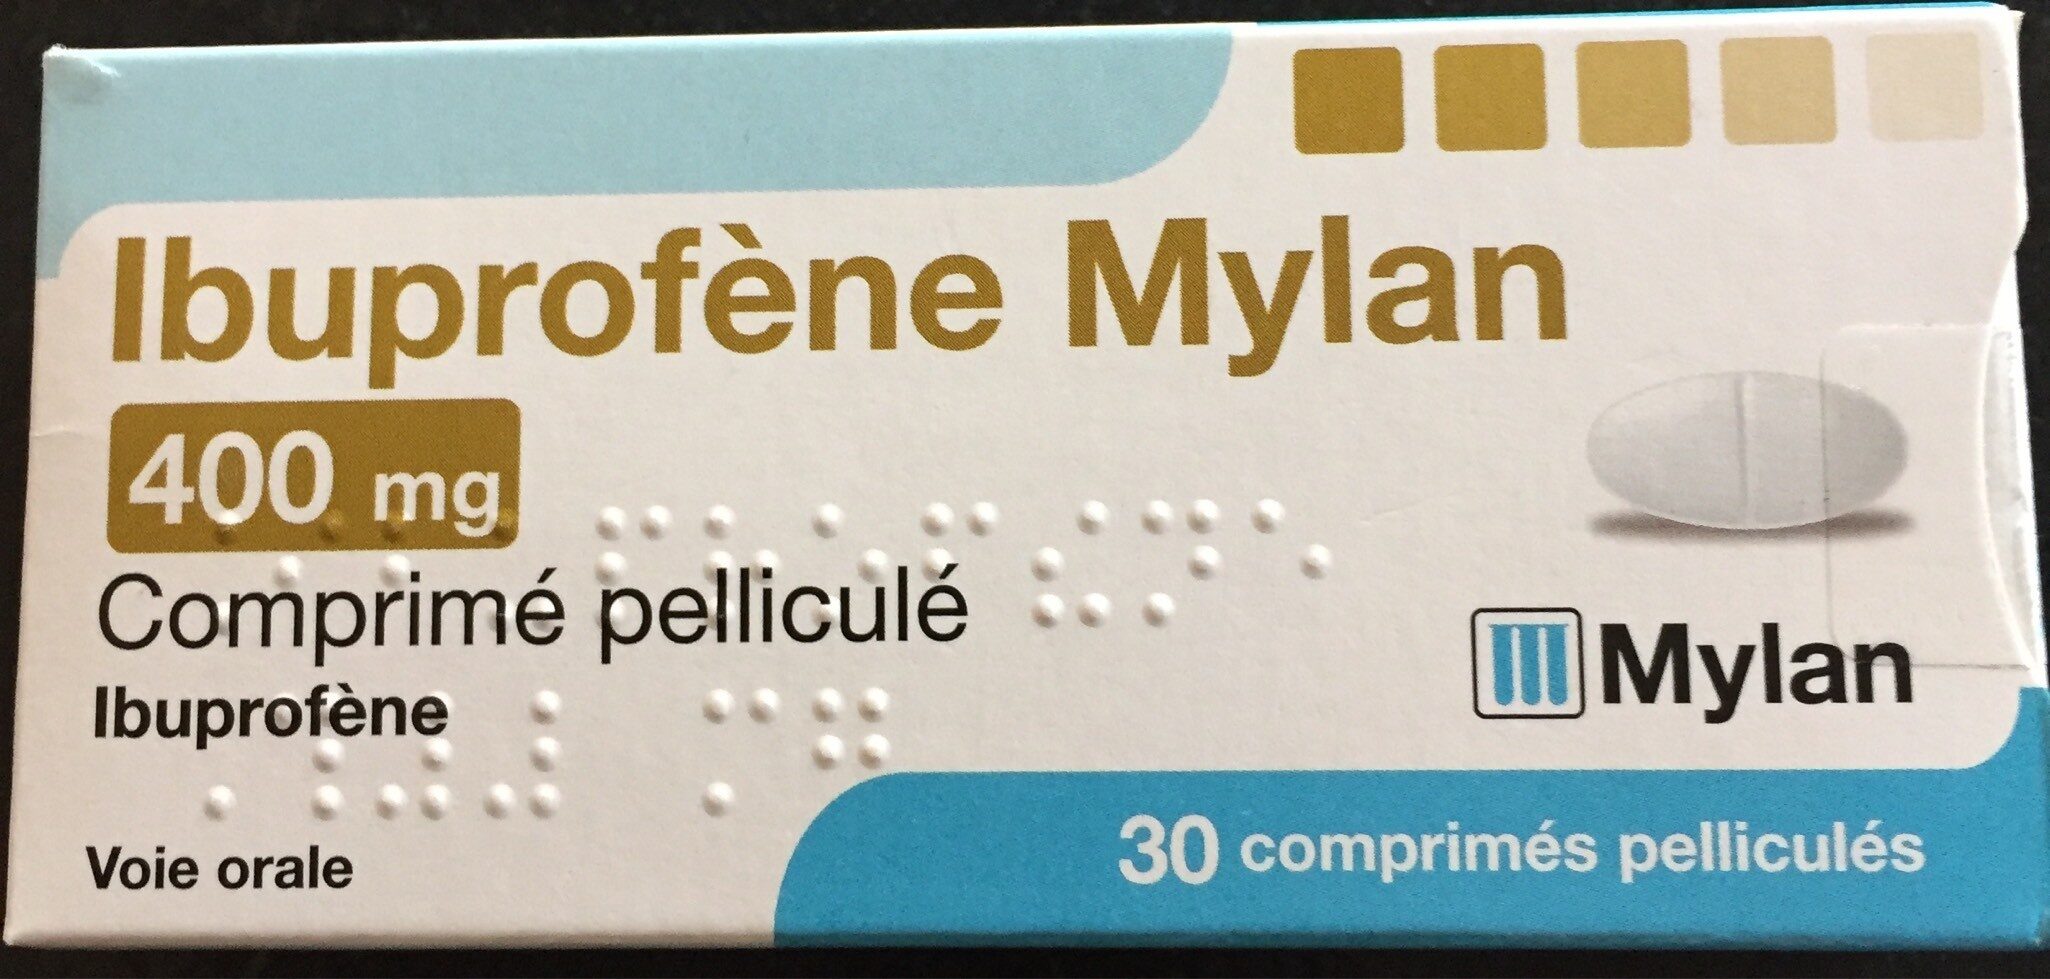 Ibuprofène Mylan 400 mg - 製品 - fr